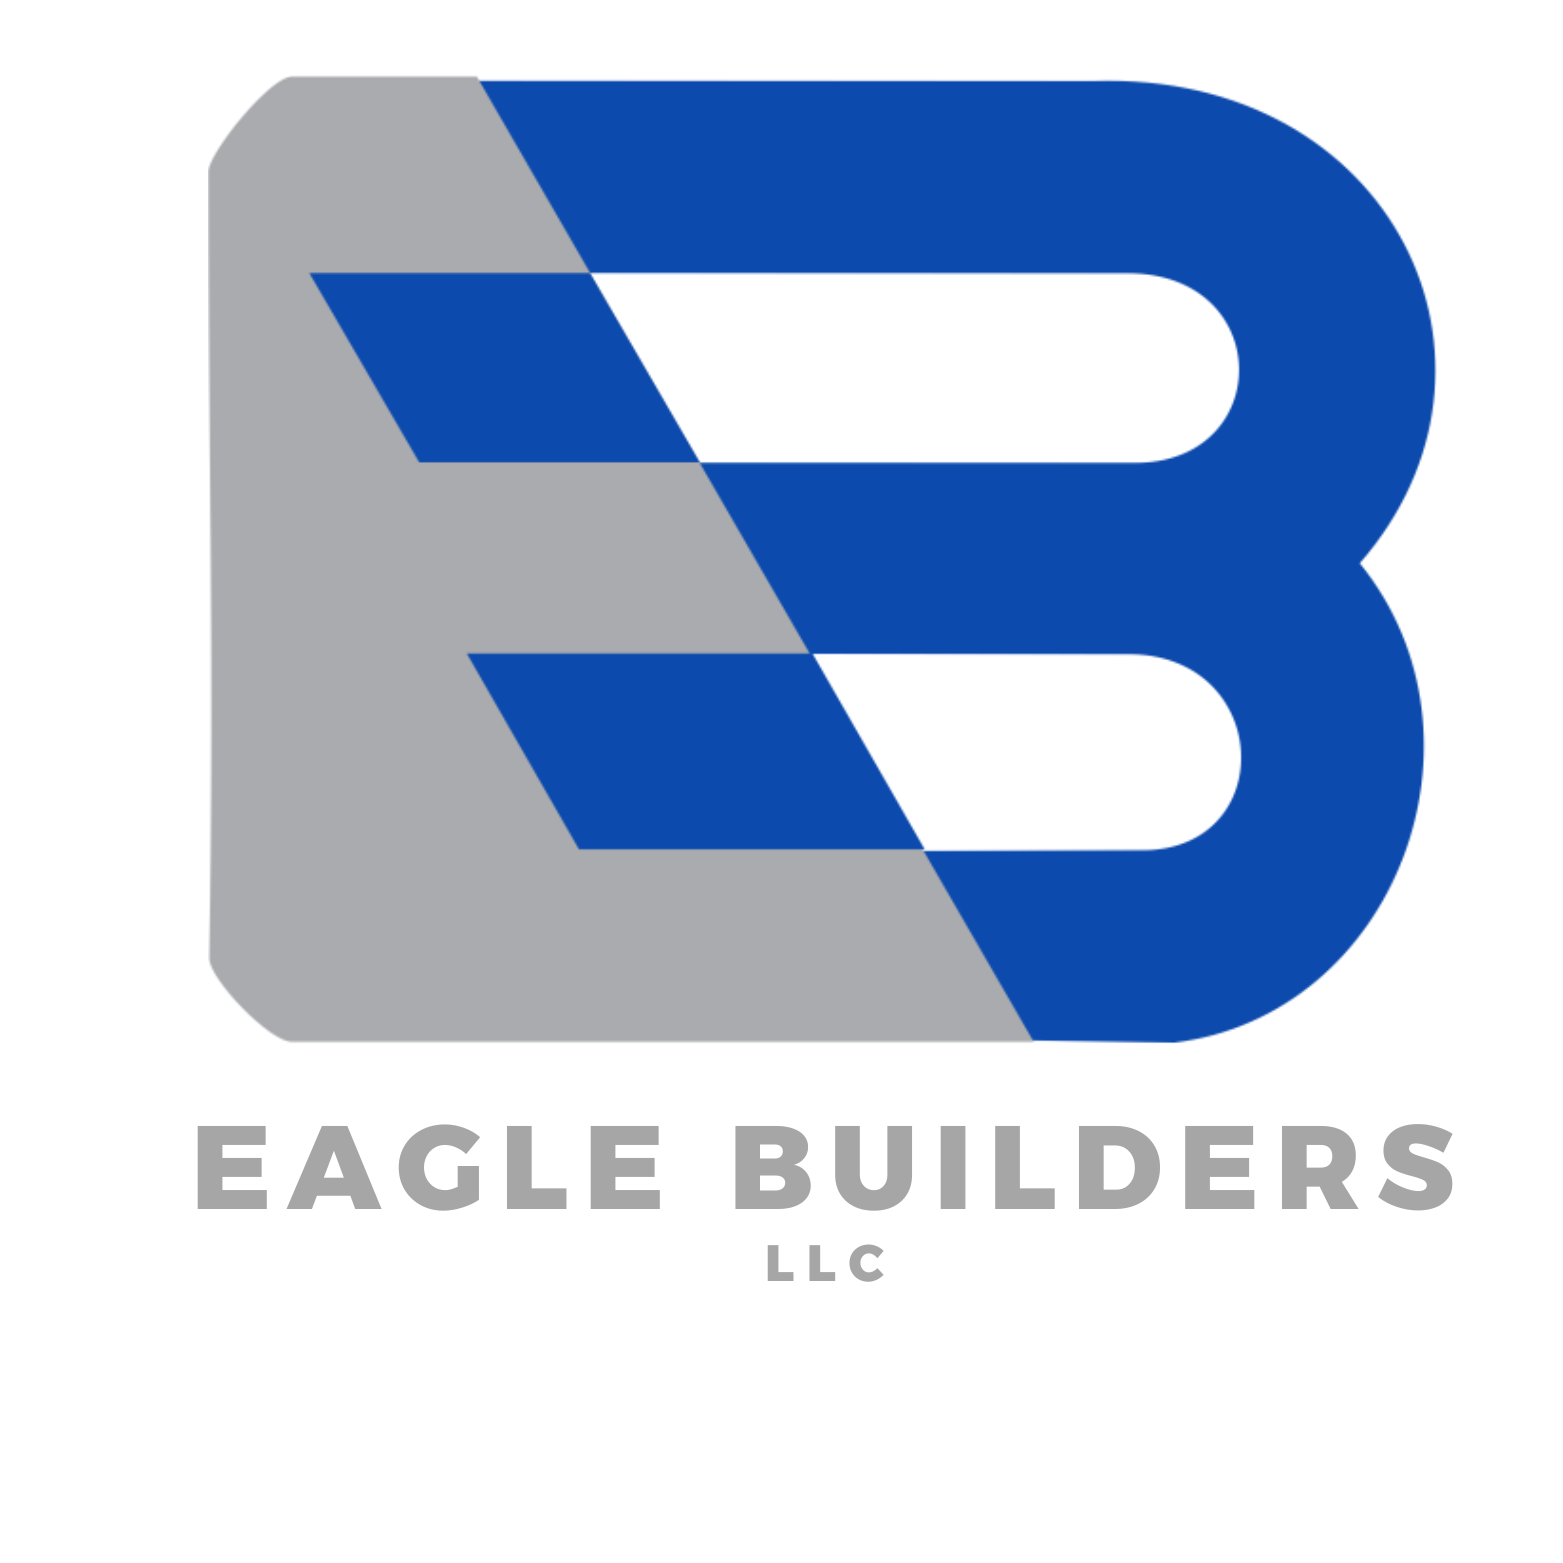 Eaglebuilders gc